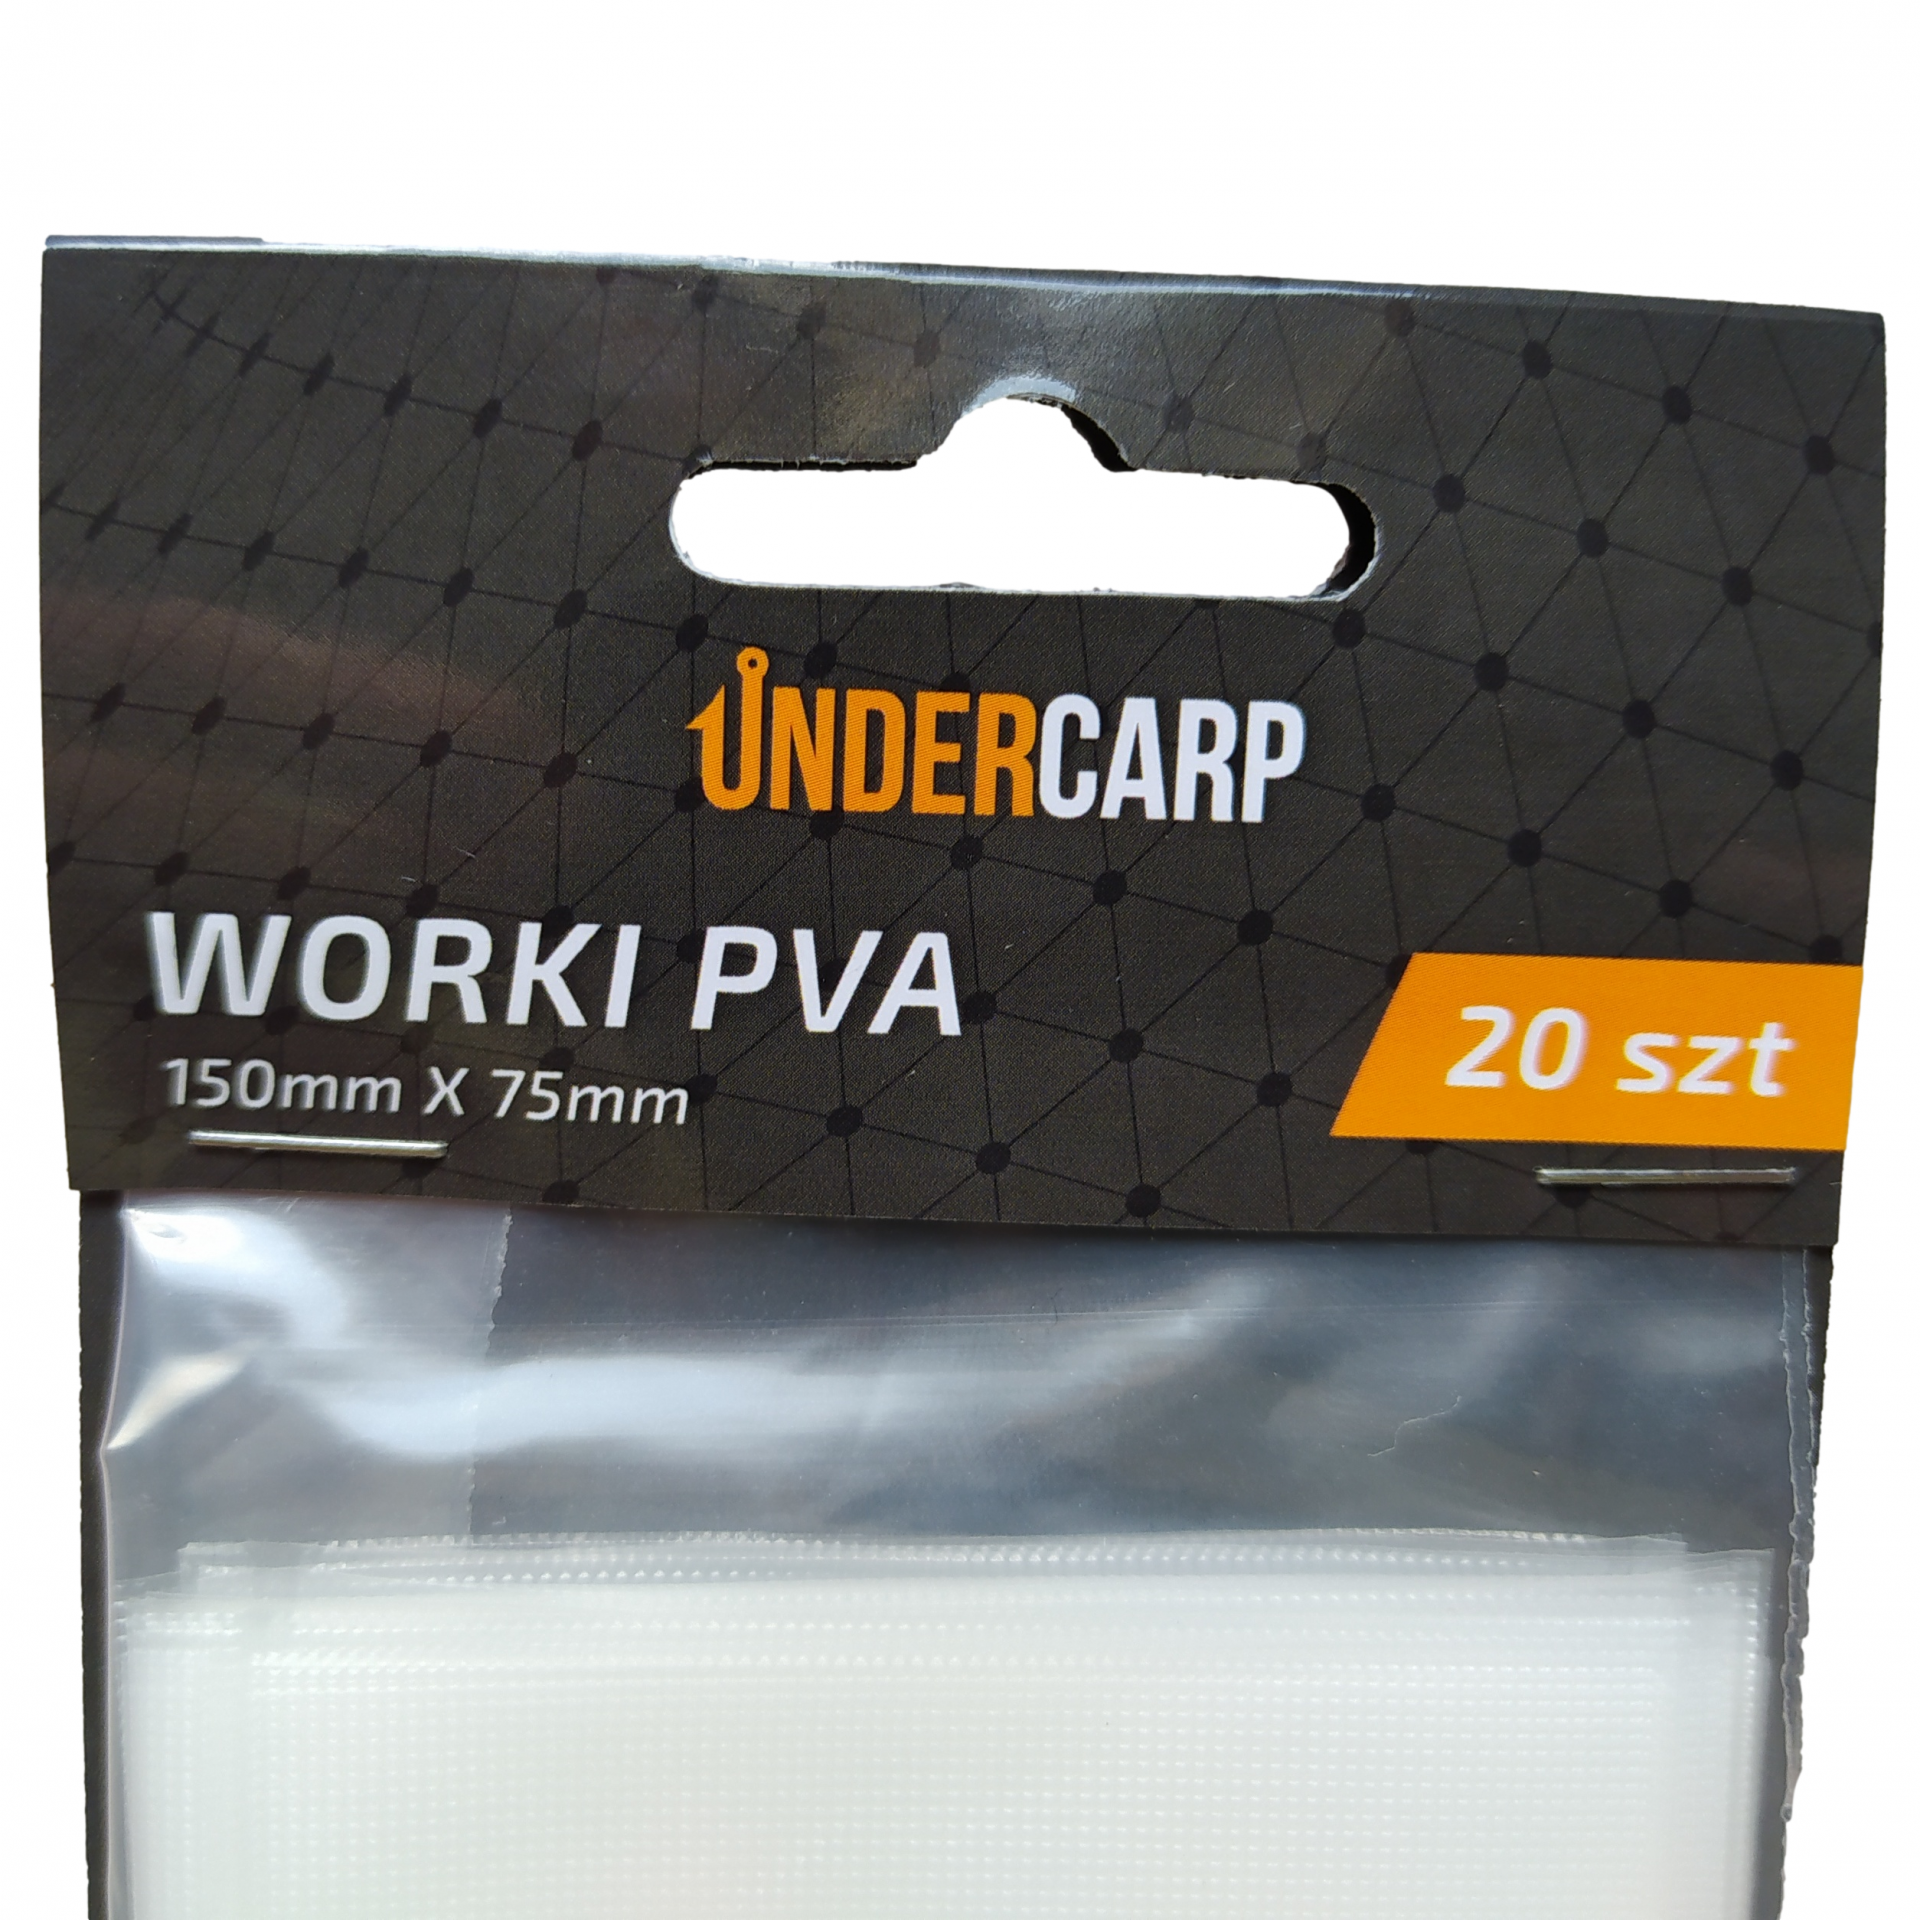 UnderCarp - Sacchetti PVA 150mm x 75mm 20 pezzi.